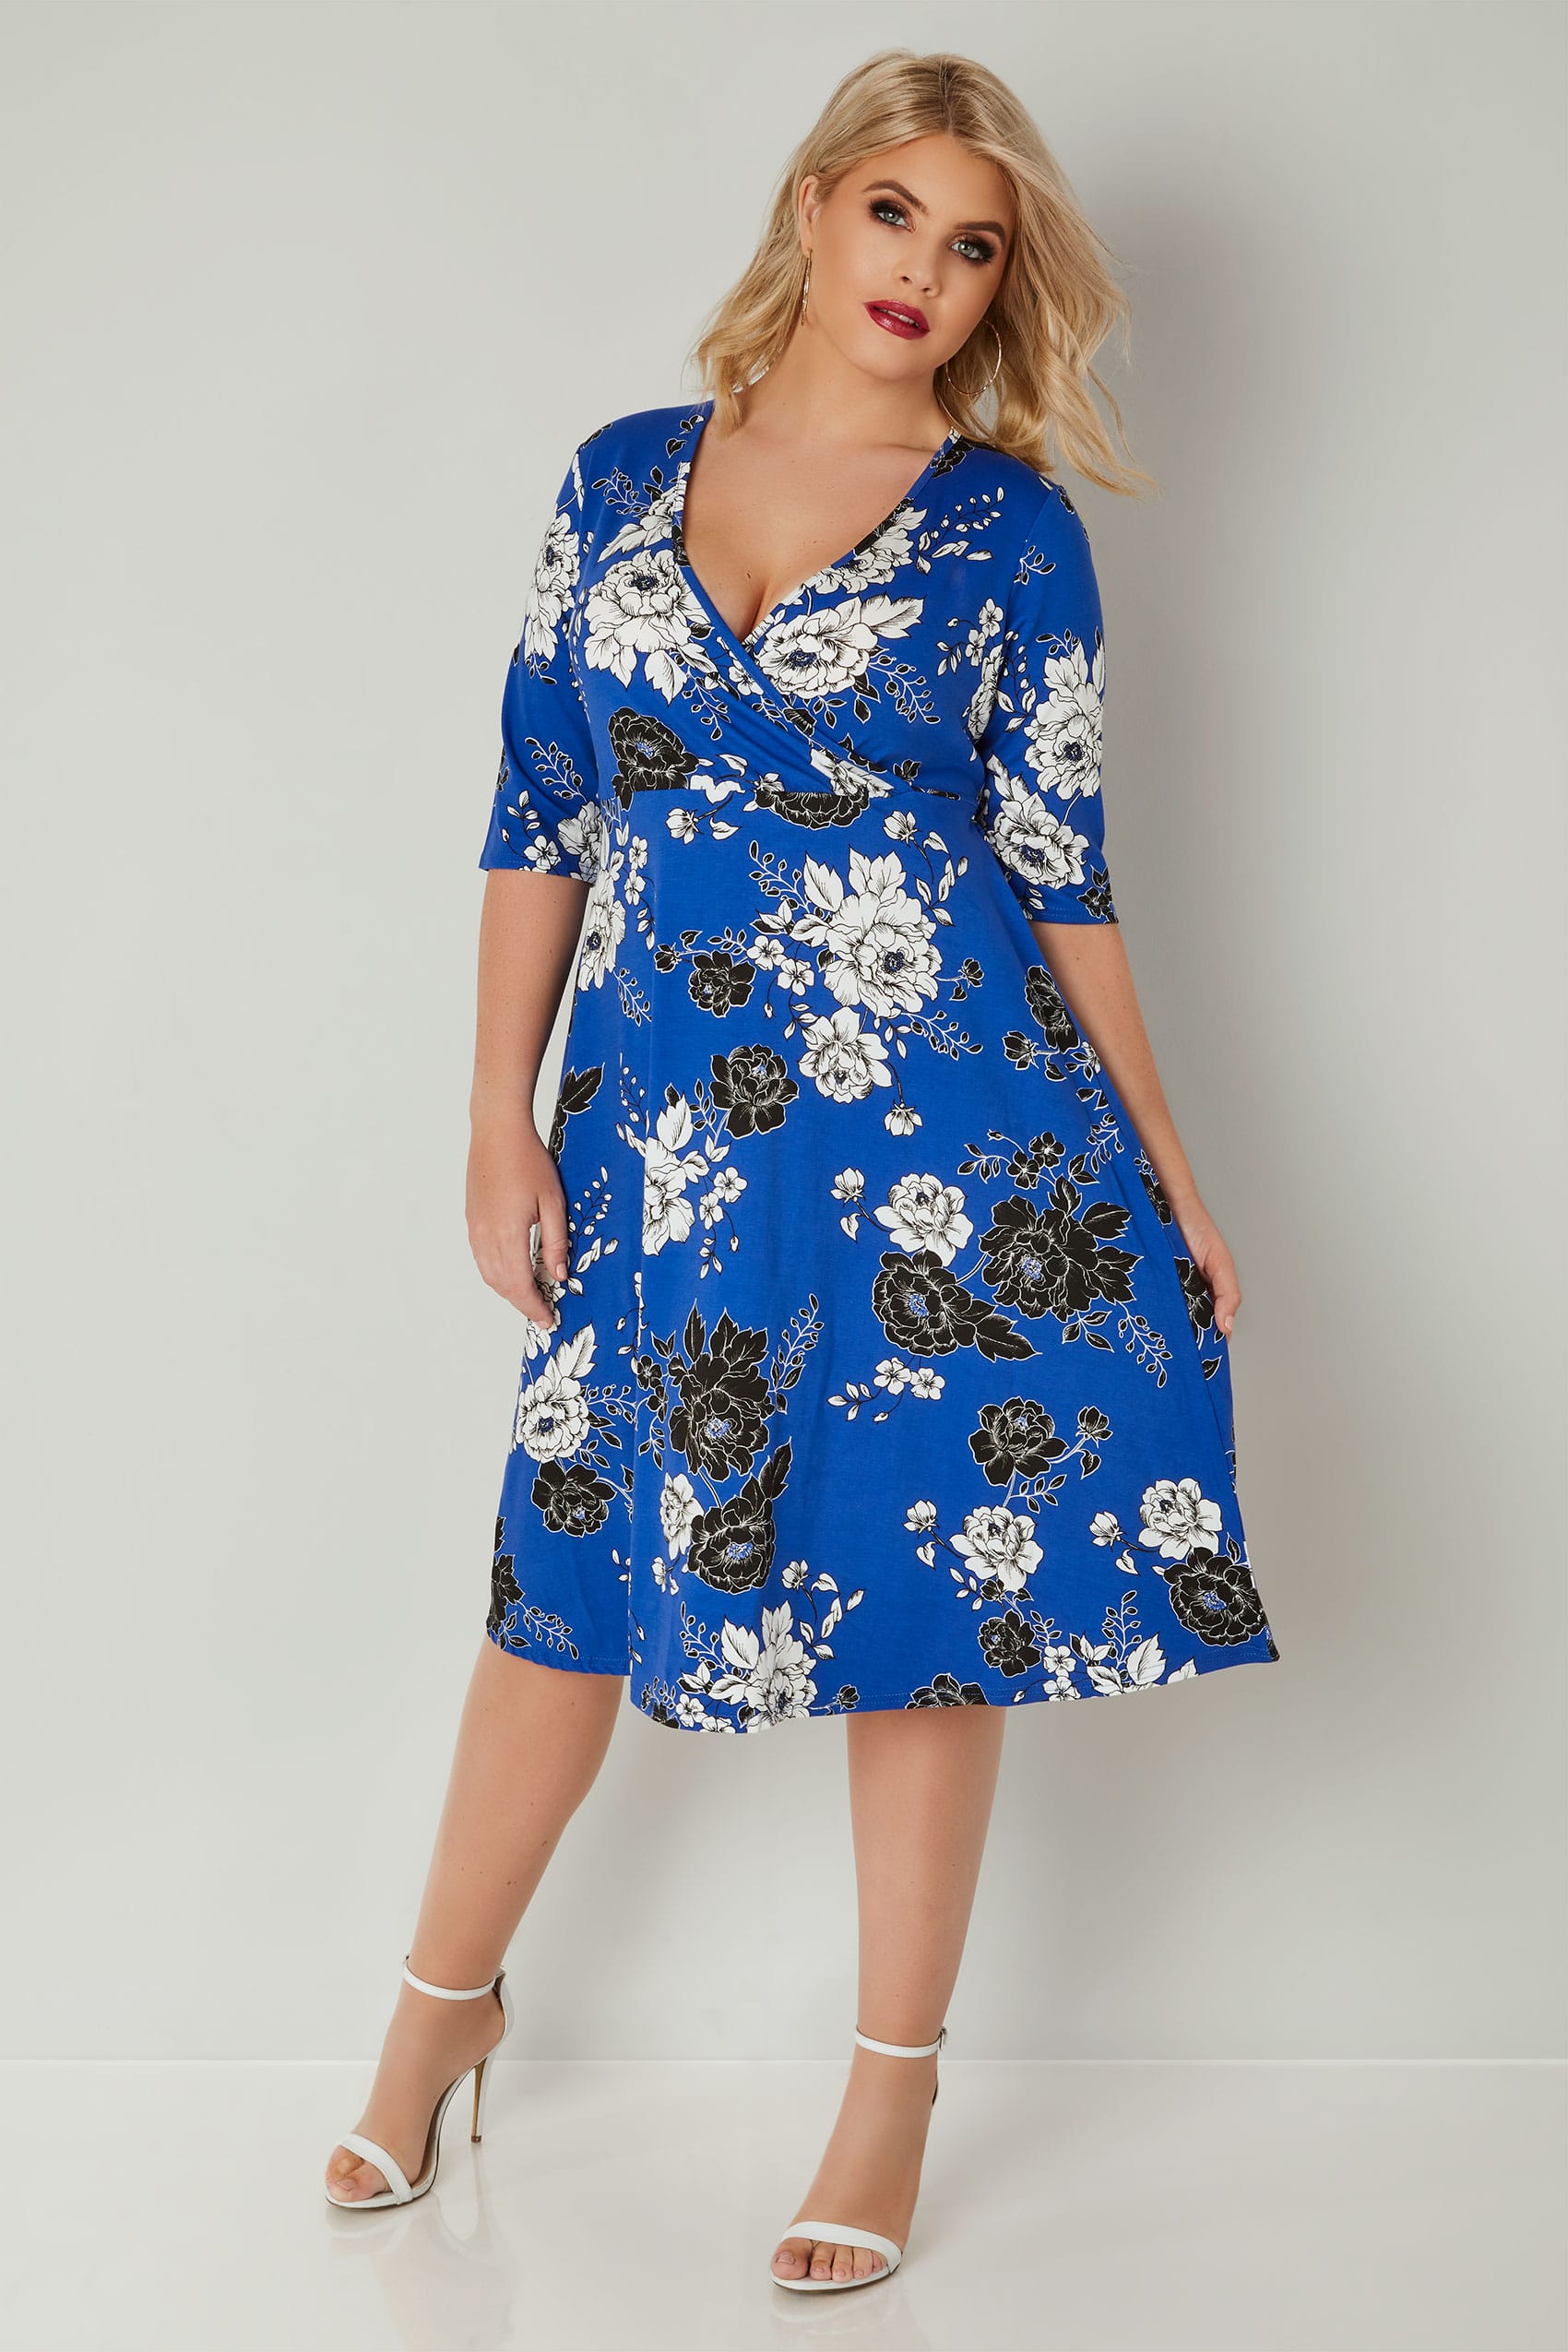 YOURS LONDON Cobalt Blue Floral Wrap Dress, Plus size 16 to 36